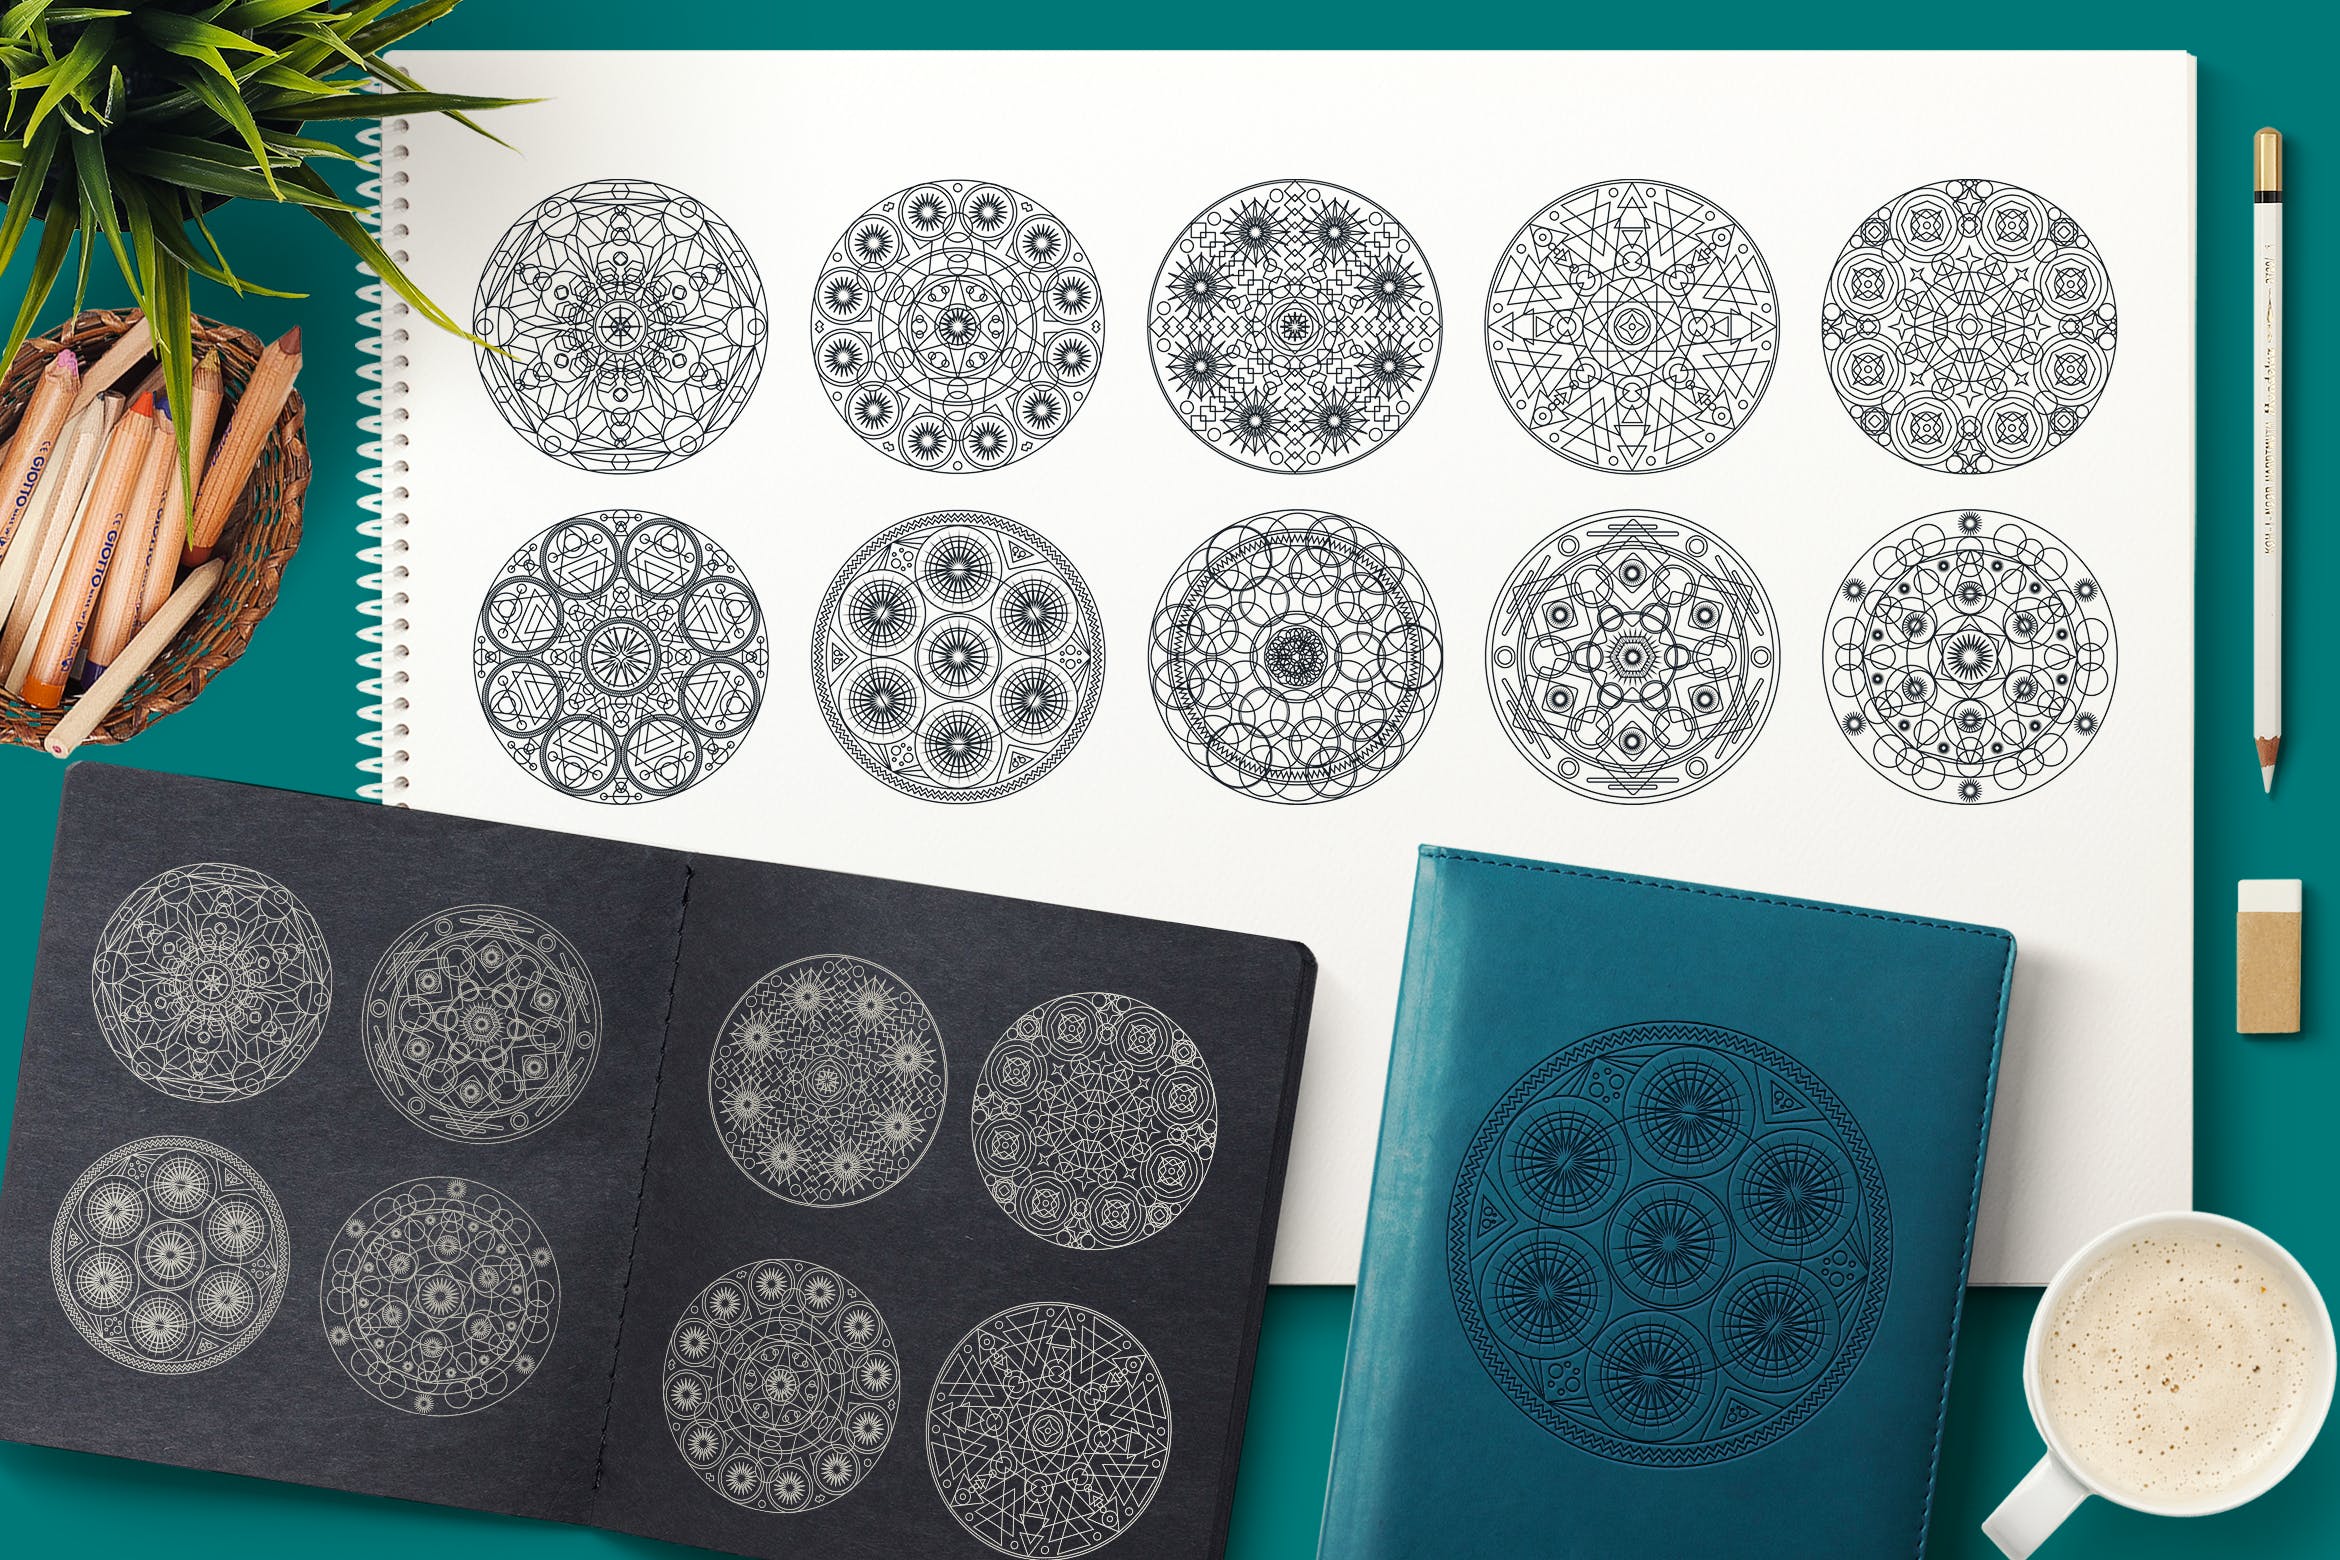 圆形曼陀罗花纹神圣几何图案矢量素材包 Sacred Geometric Mandalas Collection插图